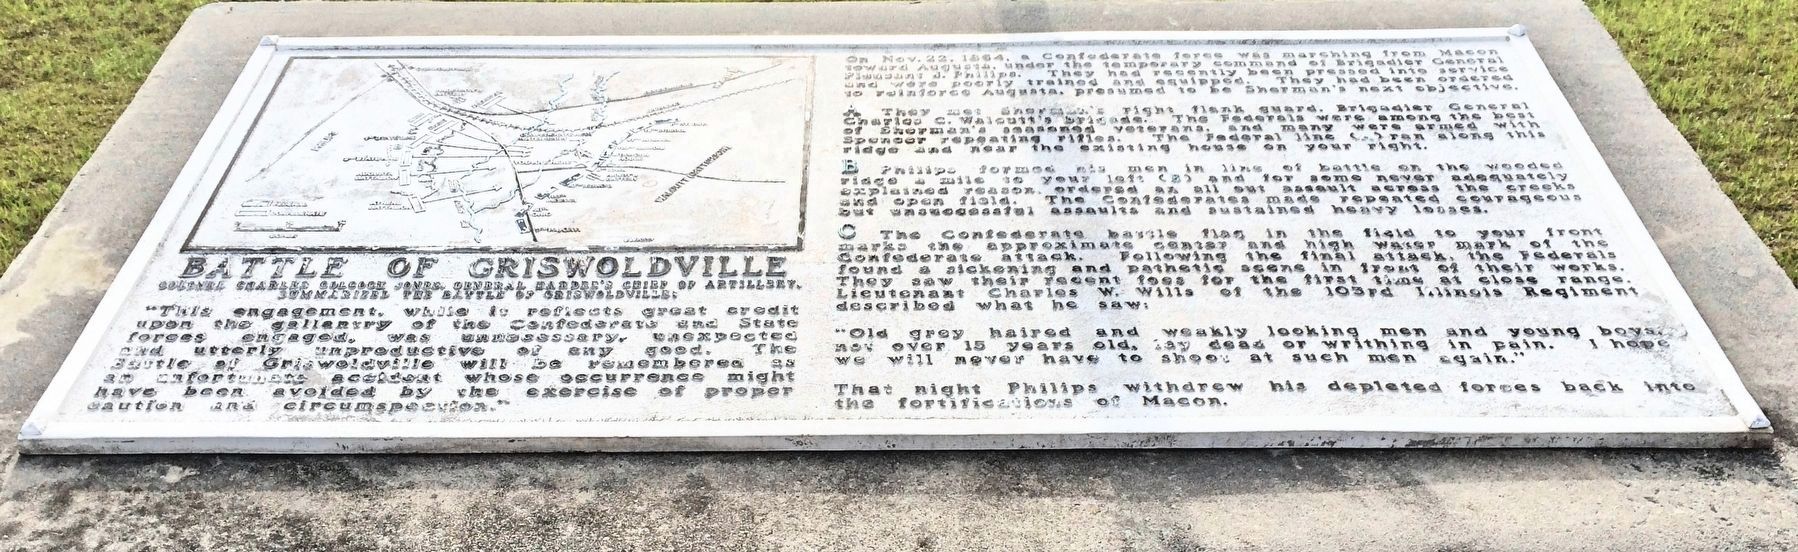 Battle of Griswoldville Marker image. Click for full size.